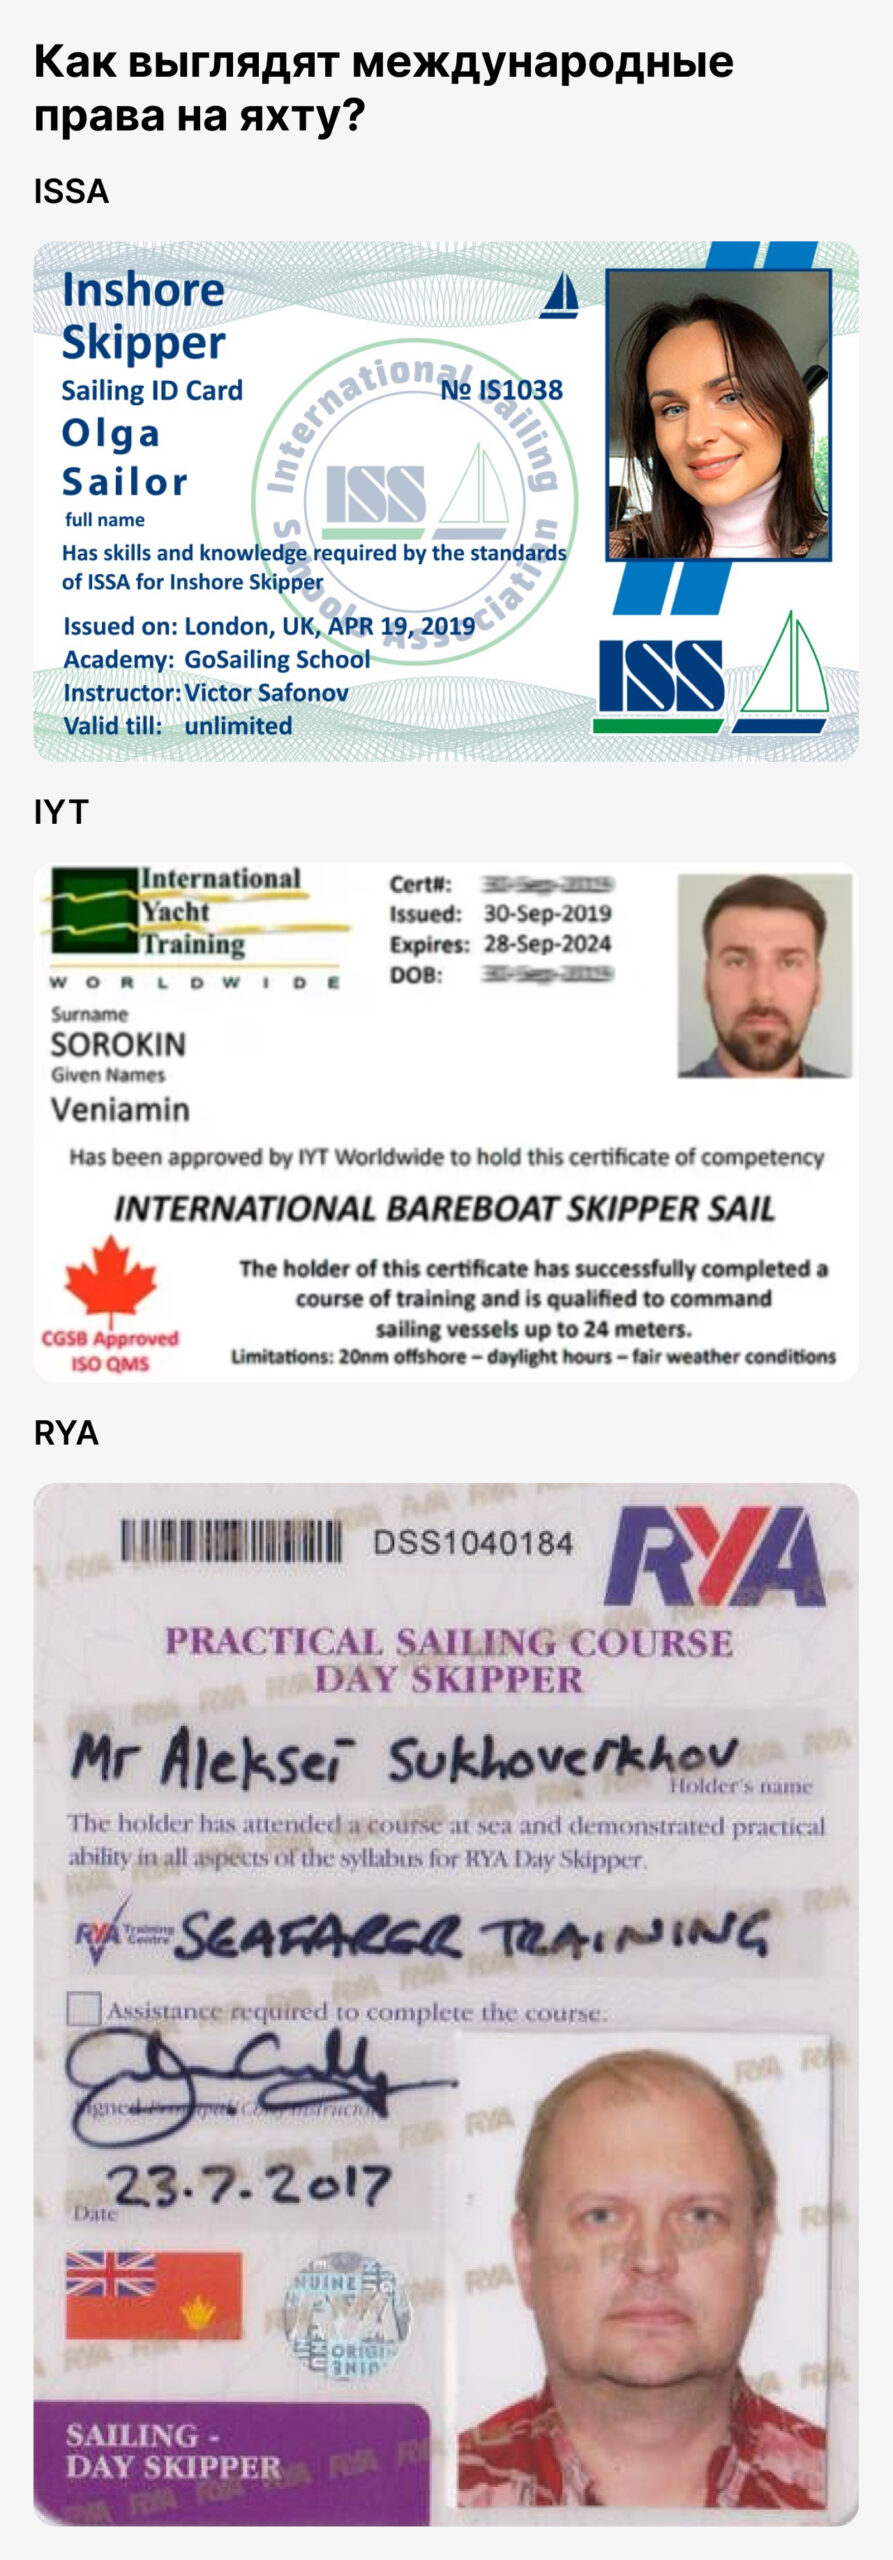 международные права на яхту ISSA, IYT, RYA